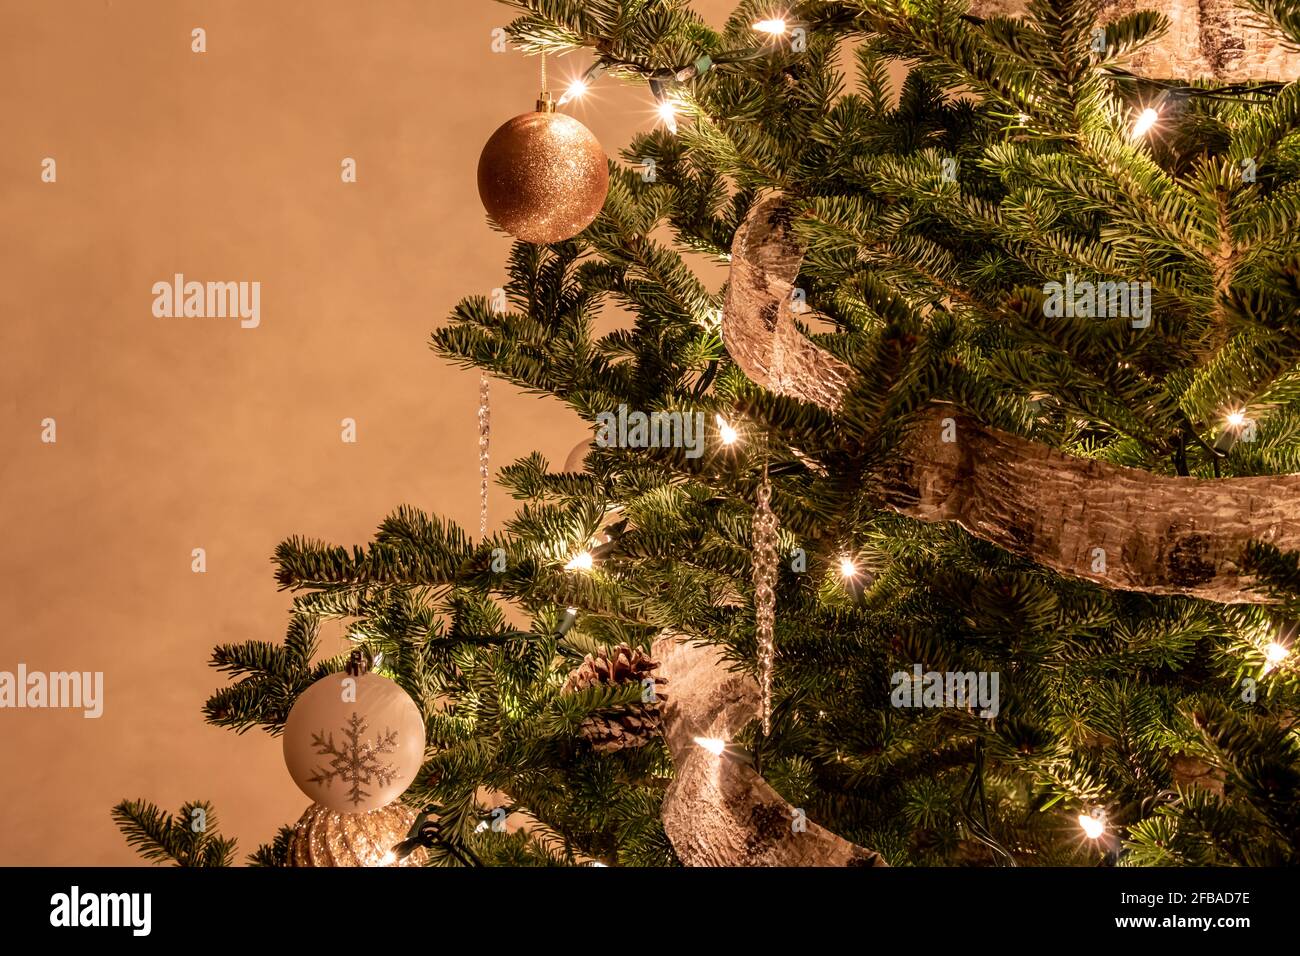 Nahaufnahme eines verzierten Weihnachtsbaums aus Fichte in neutralem Beige Farben und Erdtöne Stockfoto